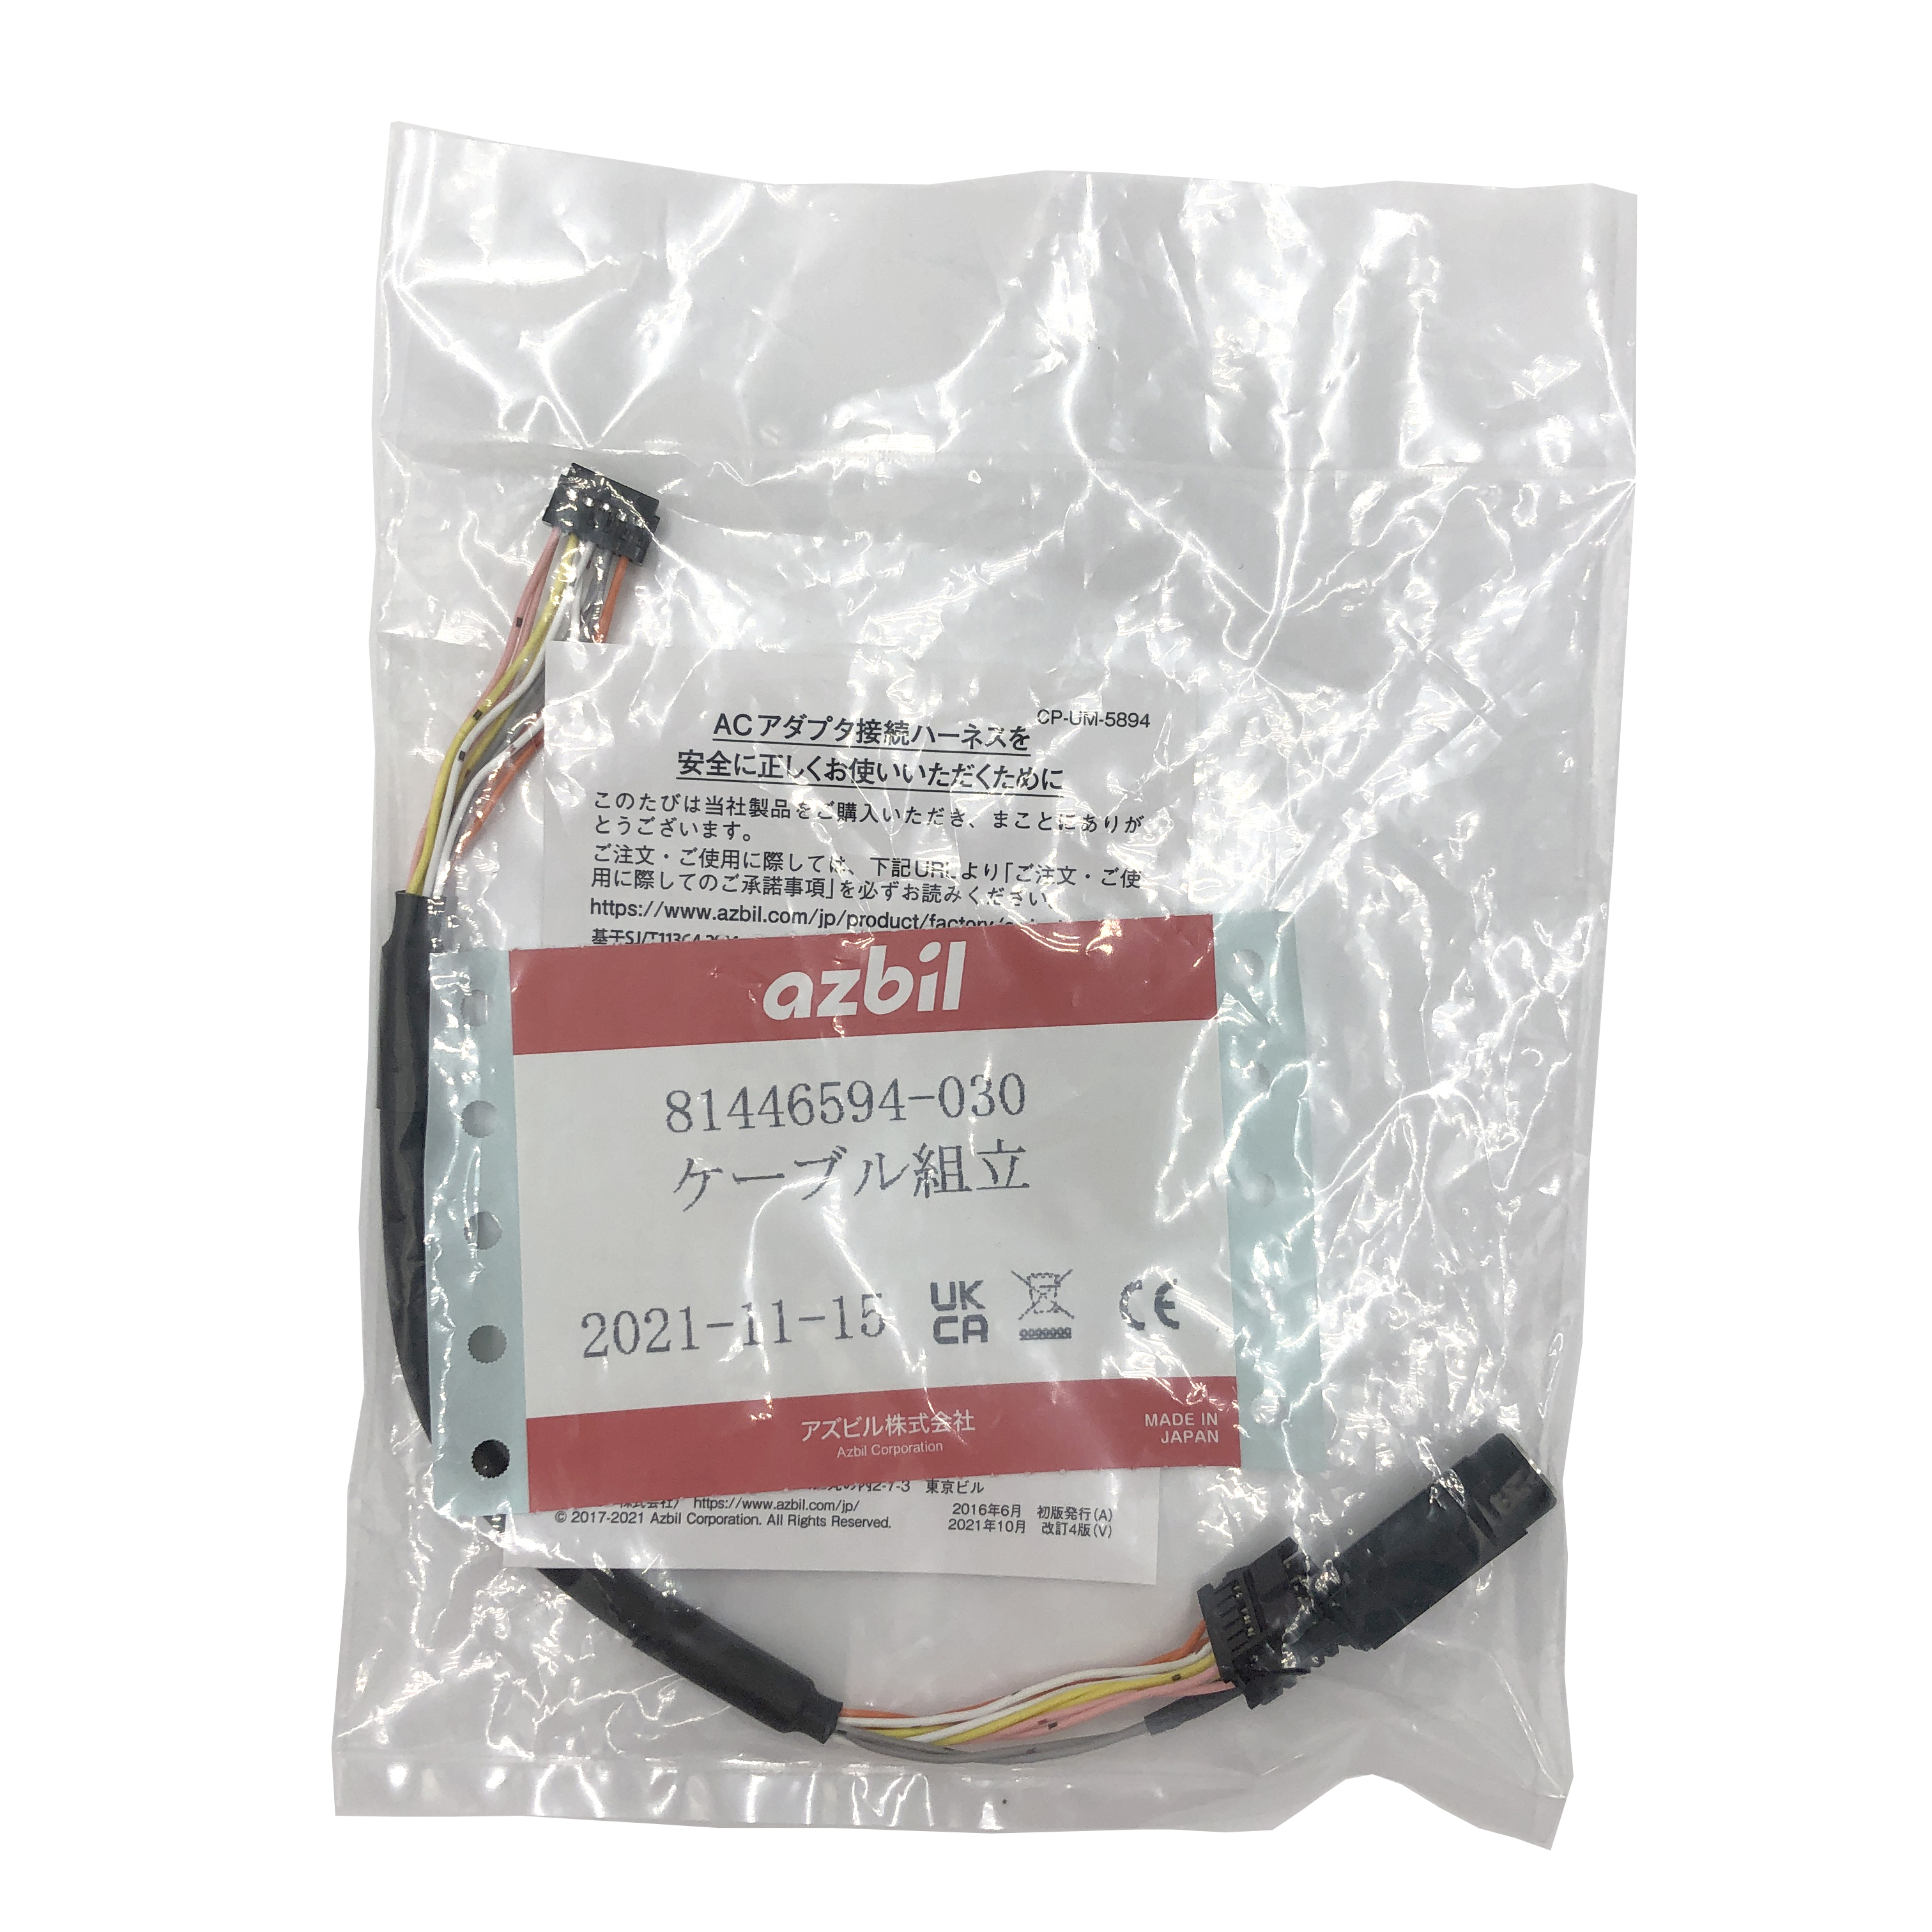 Bộ dây chuyển đổi bộ nguồn AC dùng cho đồng hồ đo lưu lượng khí Azbil 81446594-030